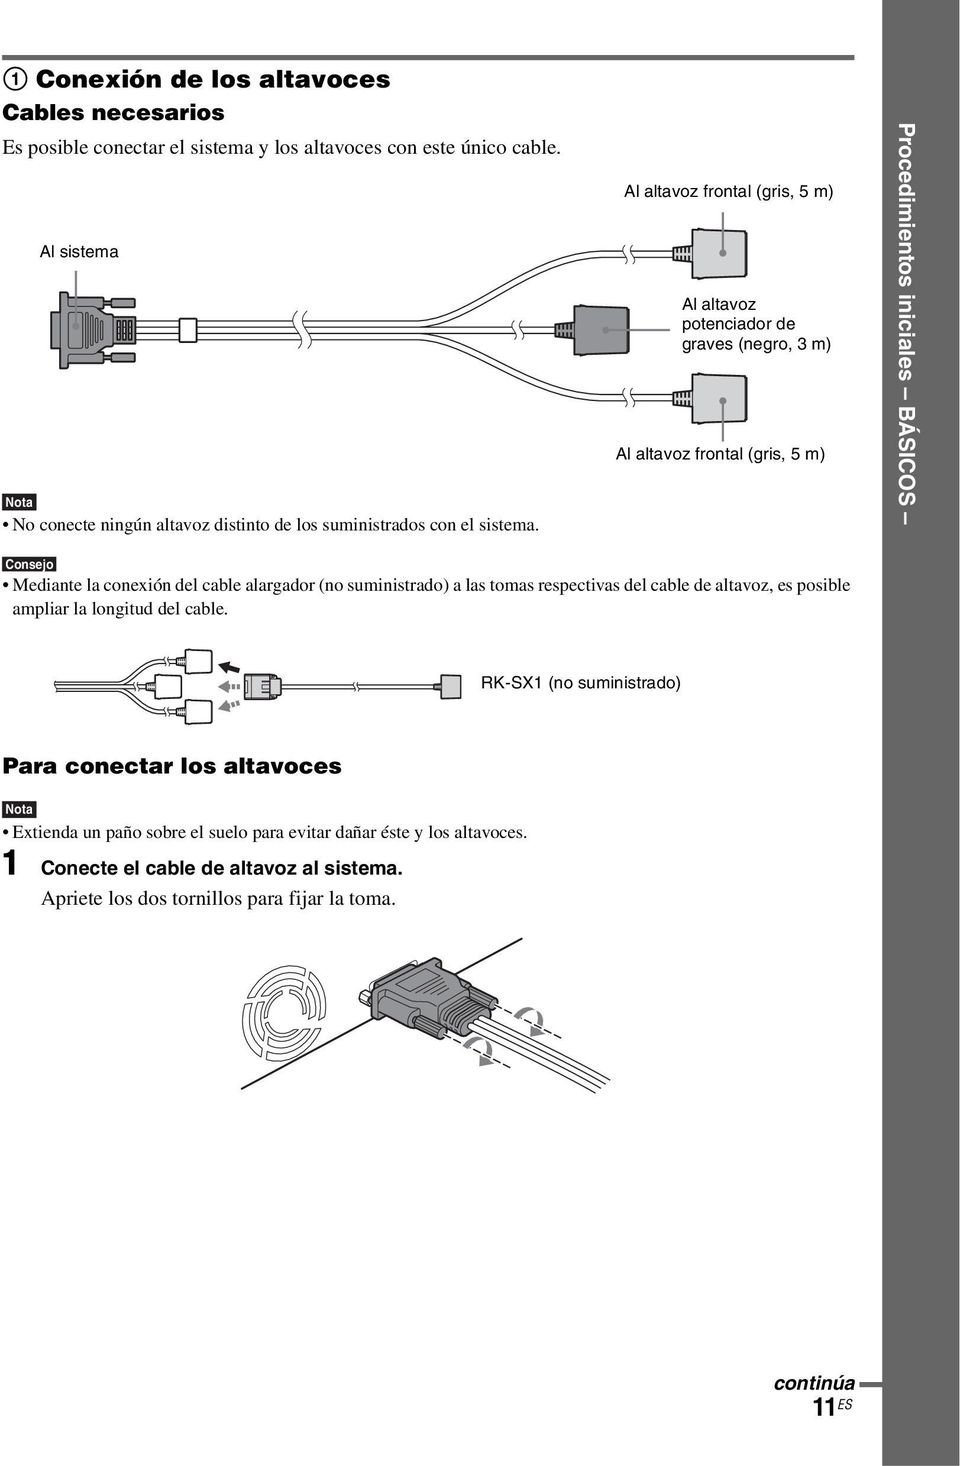 Al altavoz frontal (gris, 5 m) Al altavoz potenciador de graves (negro, 3 m) Al altavoz frontal (gris, 5 m) Procedimientos iniciales BÁSICOS Consejo Mediante la conexión del cable